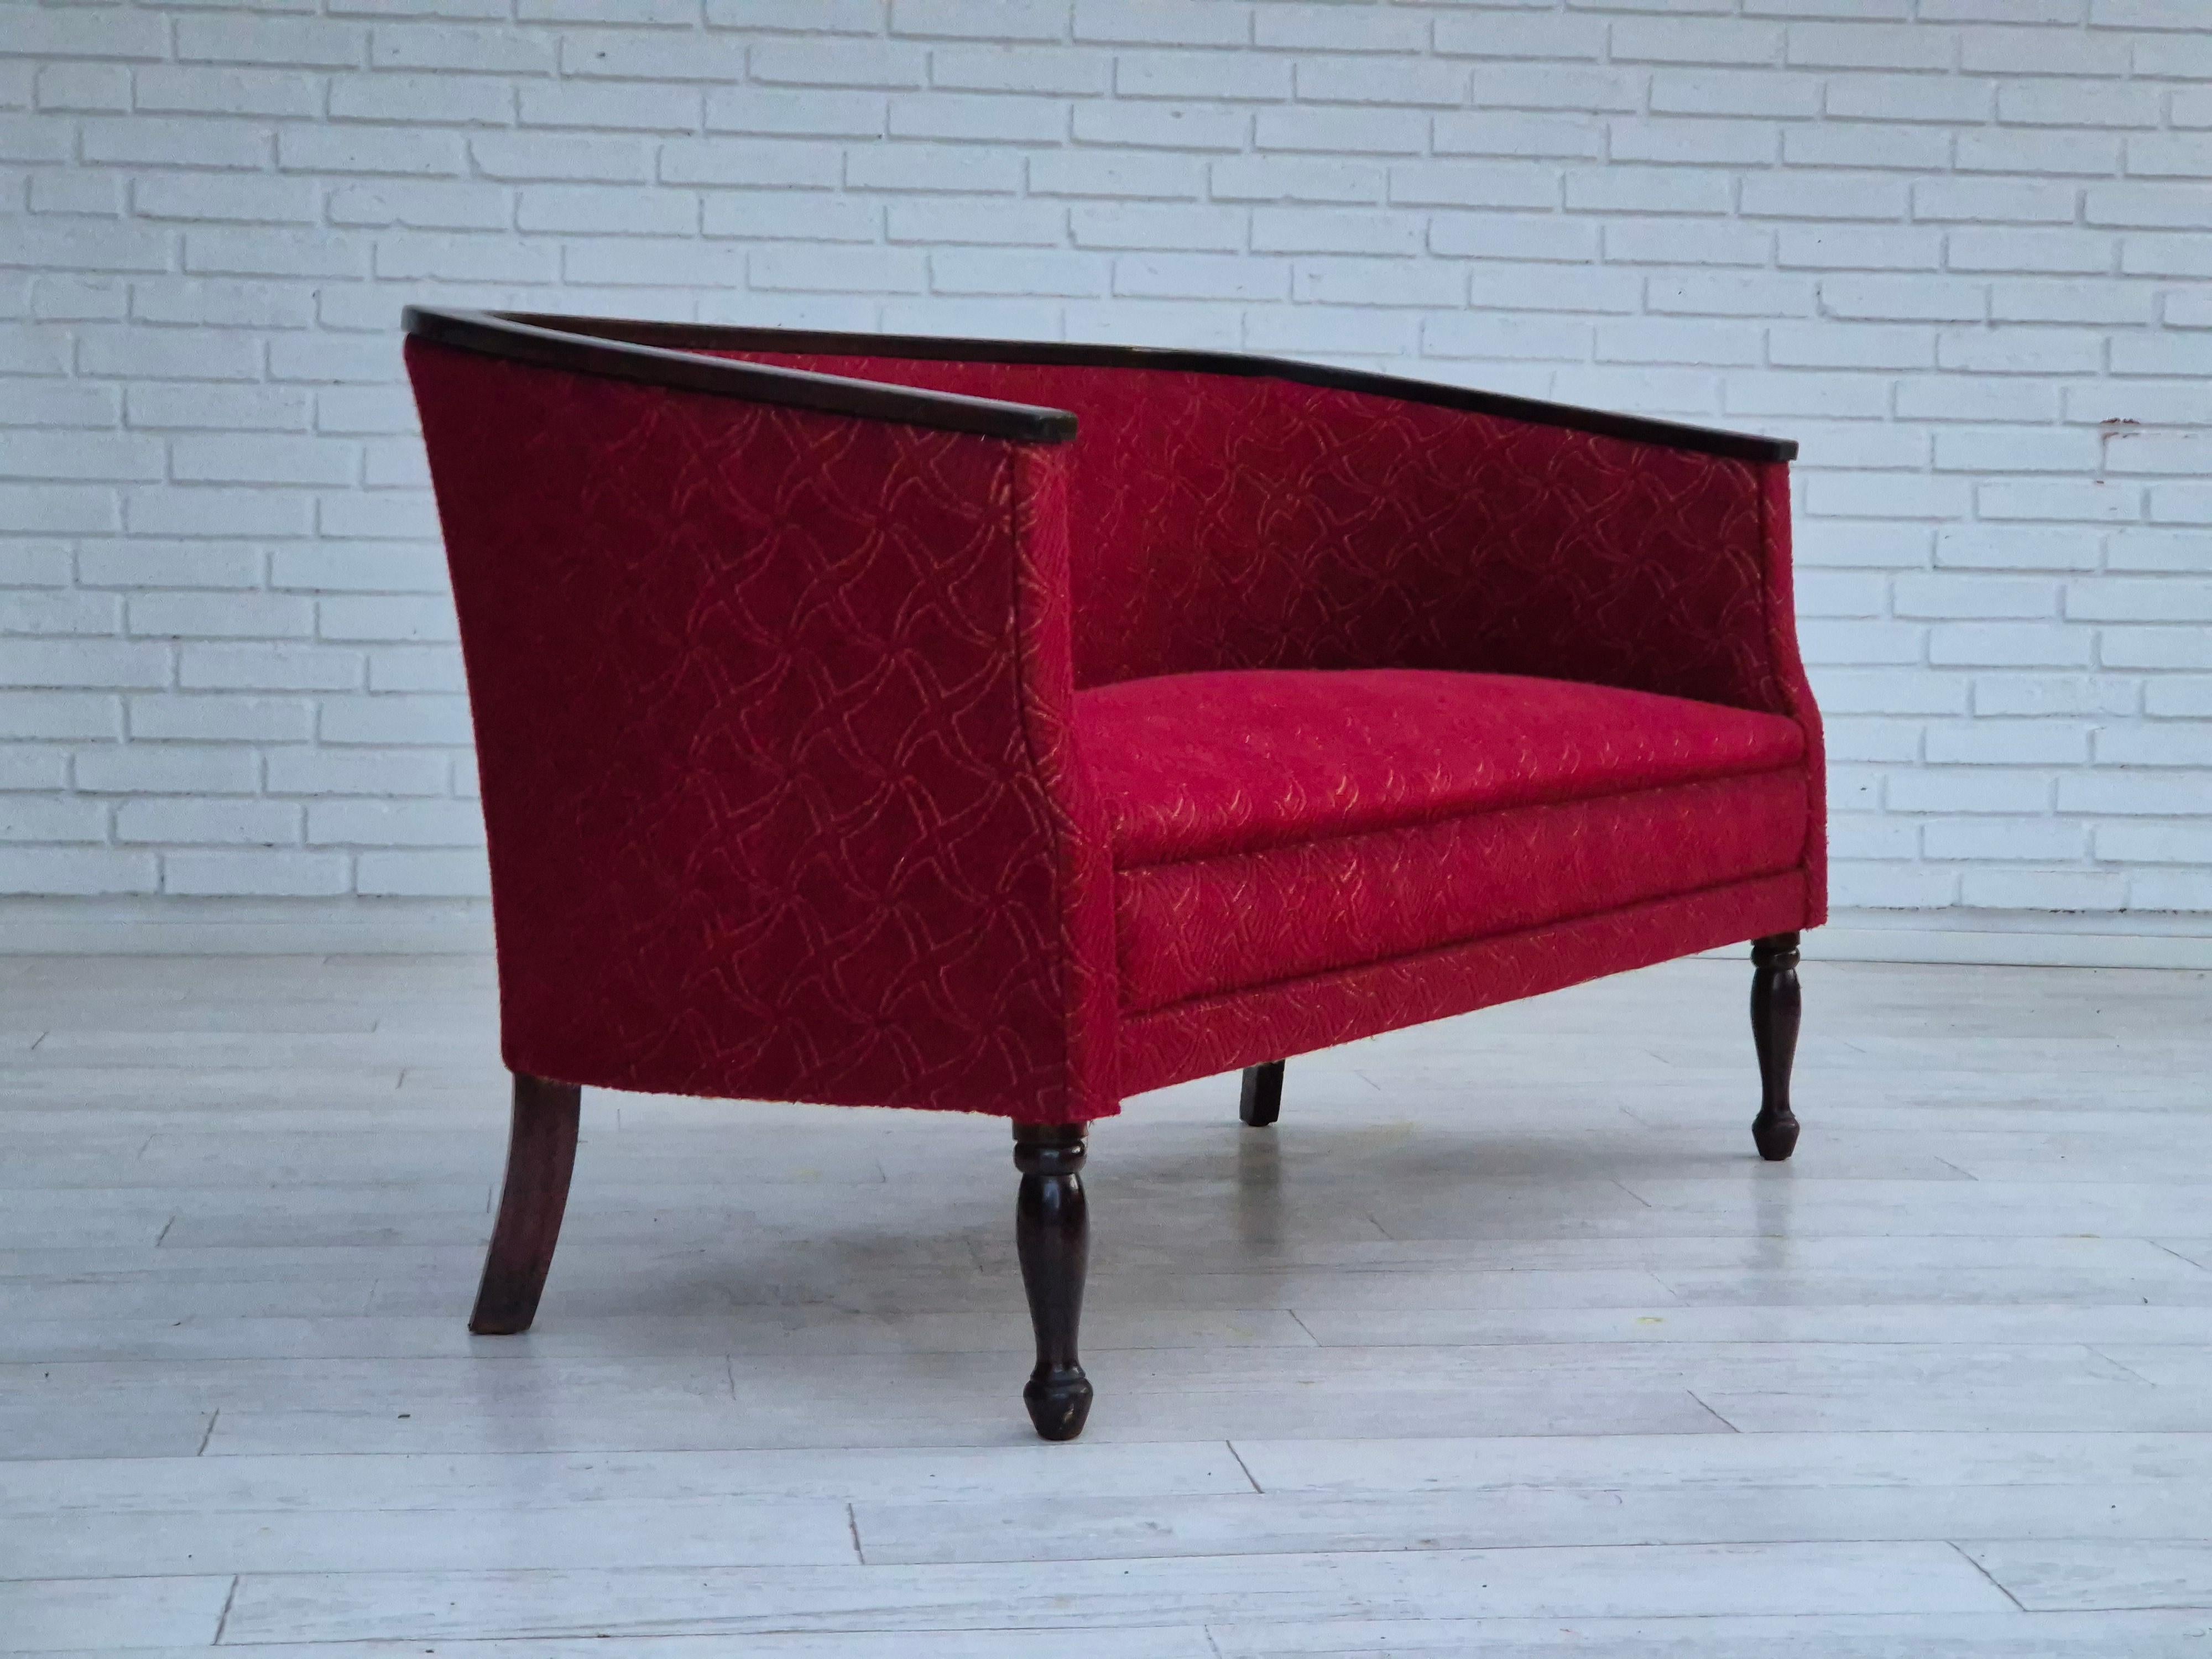 Dänisches 2-Sitzer-Sofa aus den 1950er Jahren in sehr gutem Originalzustand: keine Gerüche und keine Flecken. Roter Möbelstoff, Beine und Armlehnen aus dunkel lackiertem Eschenholz. Messingfedern im Sitz. Neue Federgurte unter dem Sitz. Hergestellt